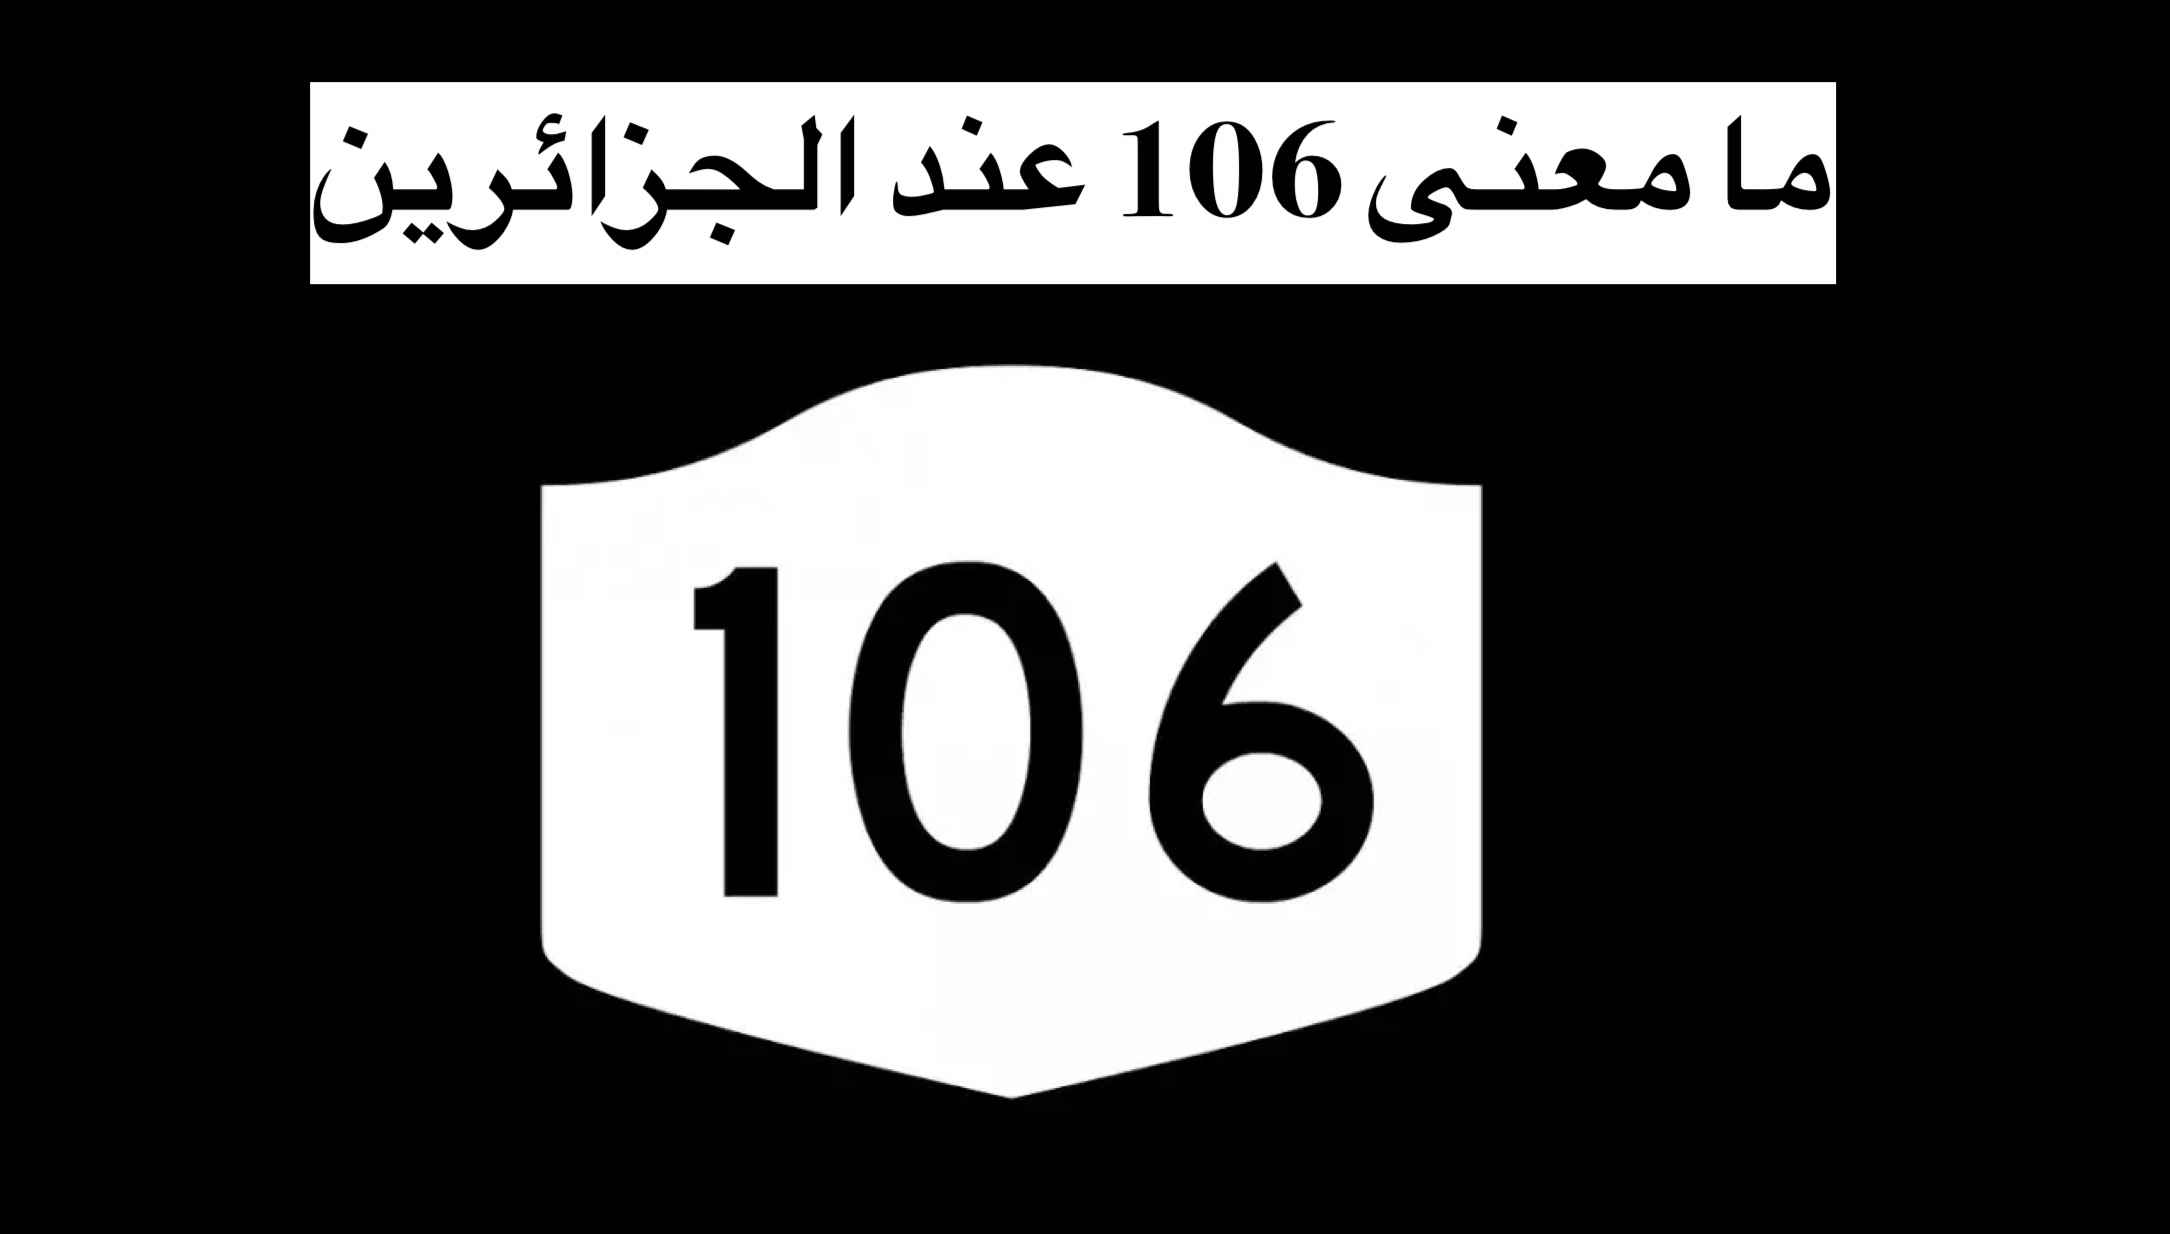 ما معنى 106 عند الجزائرين